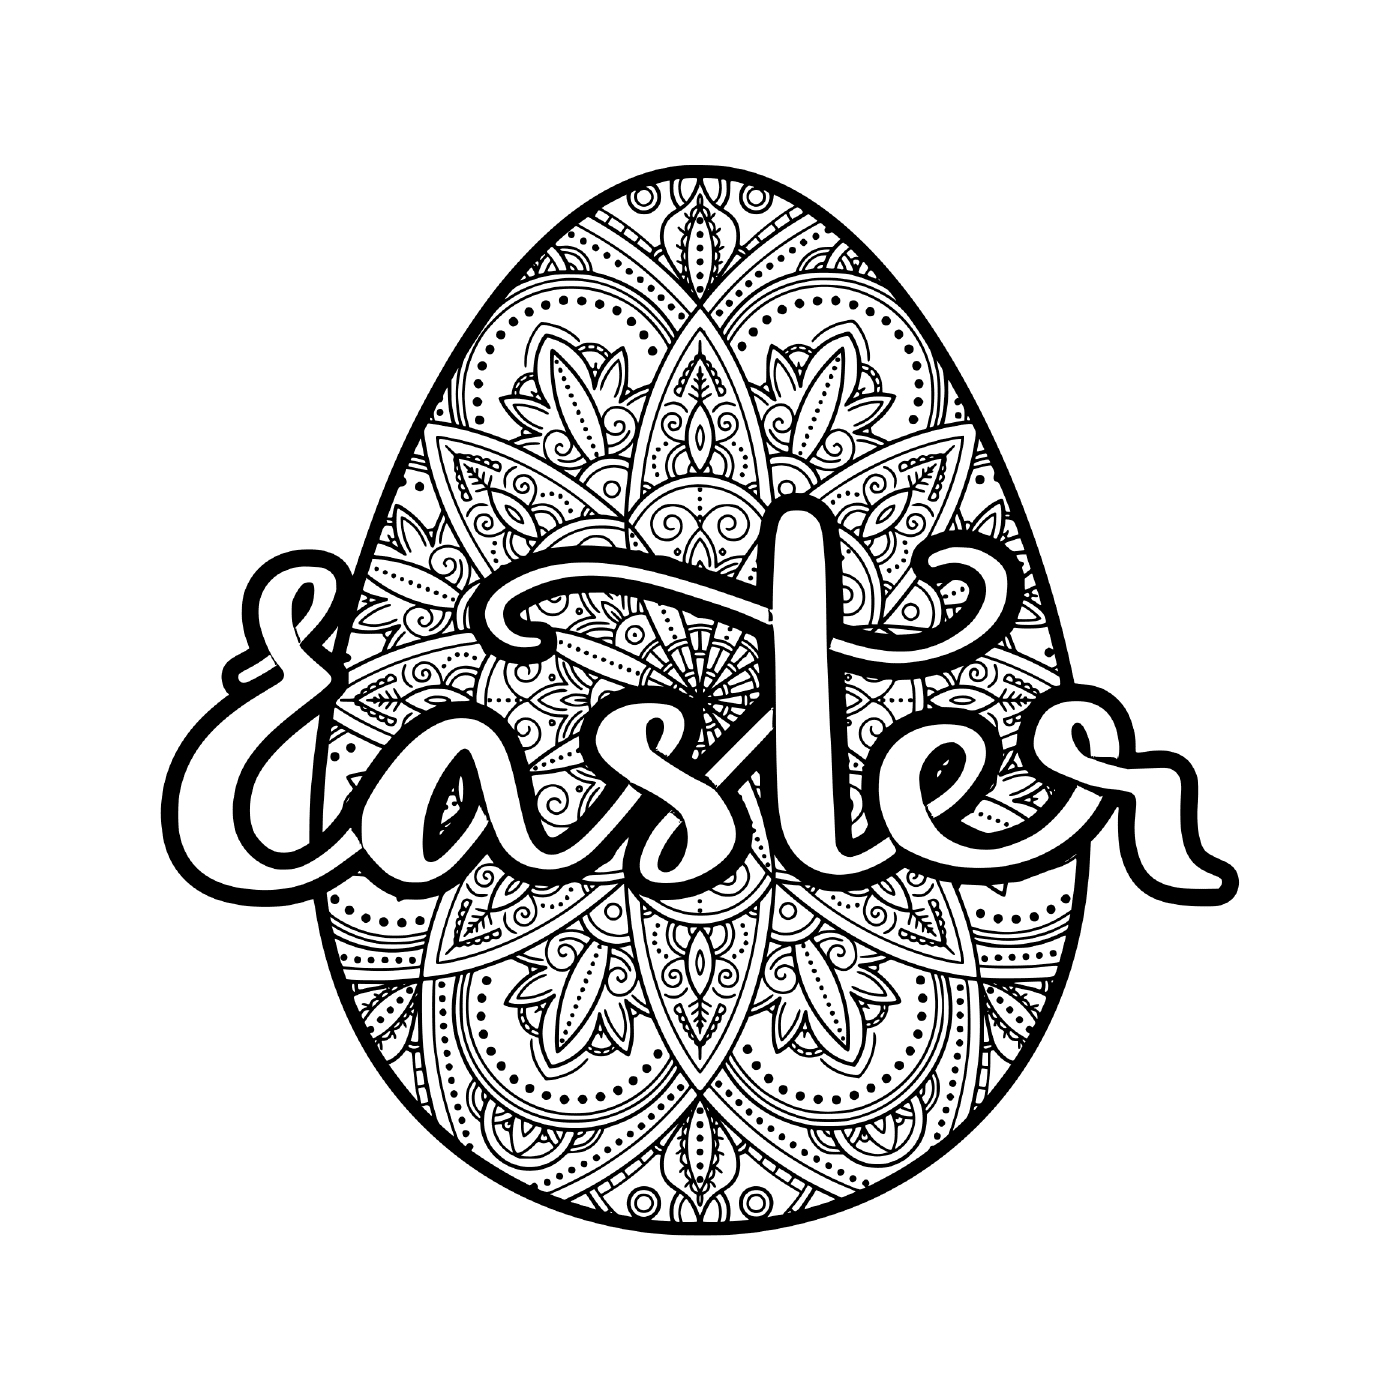  Diseño complejo de huevos de Pascua 